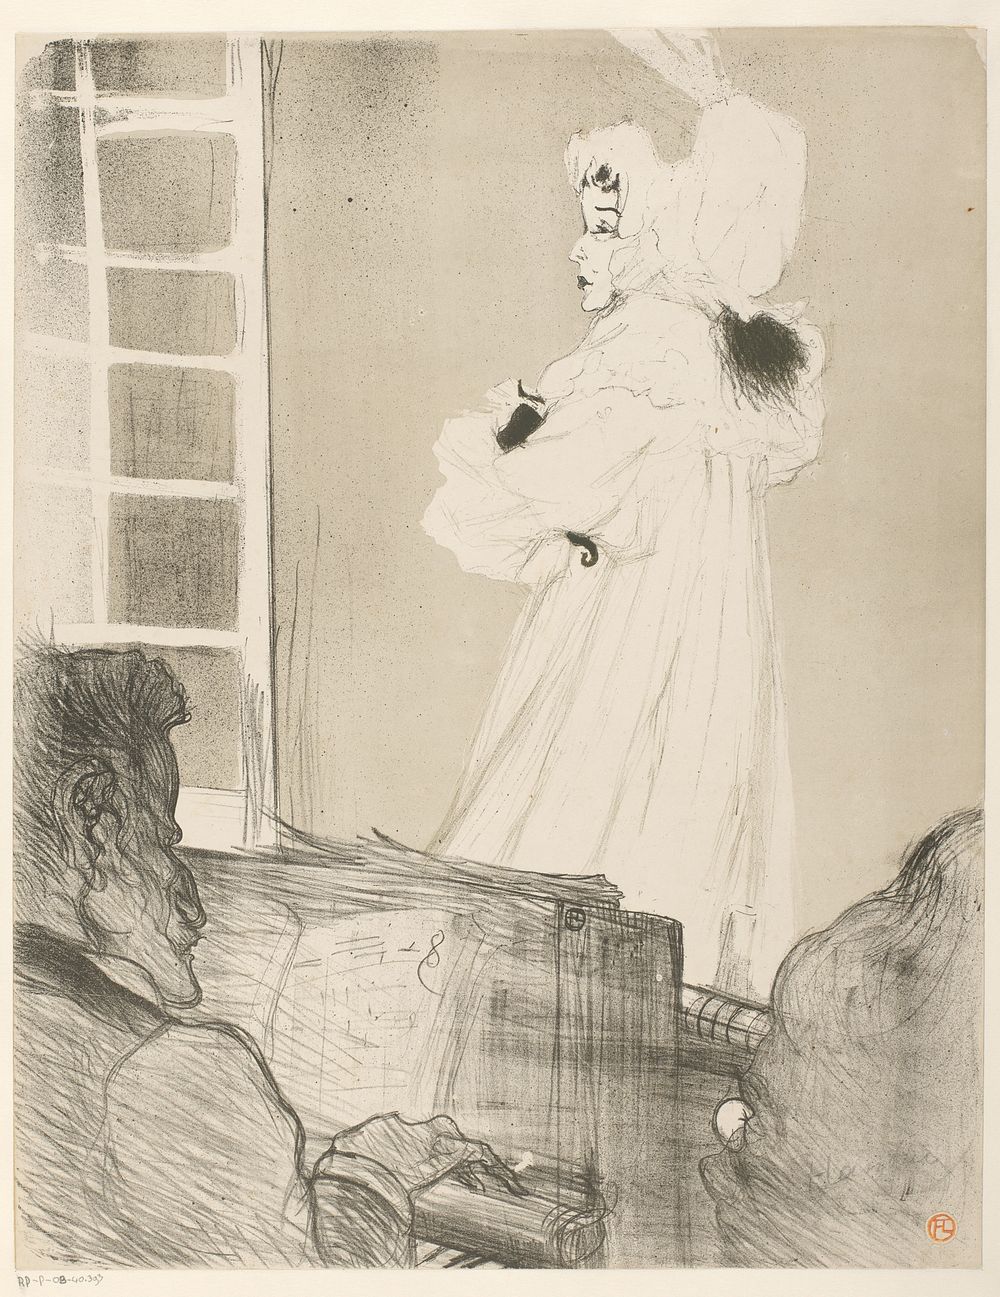 Portret van May Belfort (May Egan) met twee figuren en een piano (1895) by Henri de Toulouse Lautrec and La Revue blanche